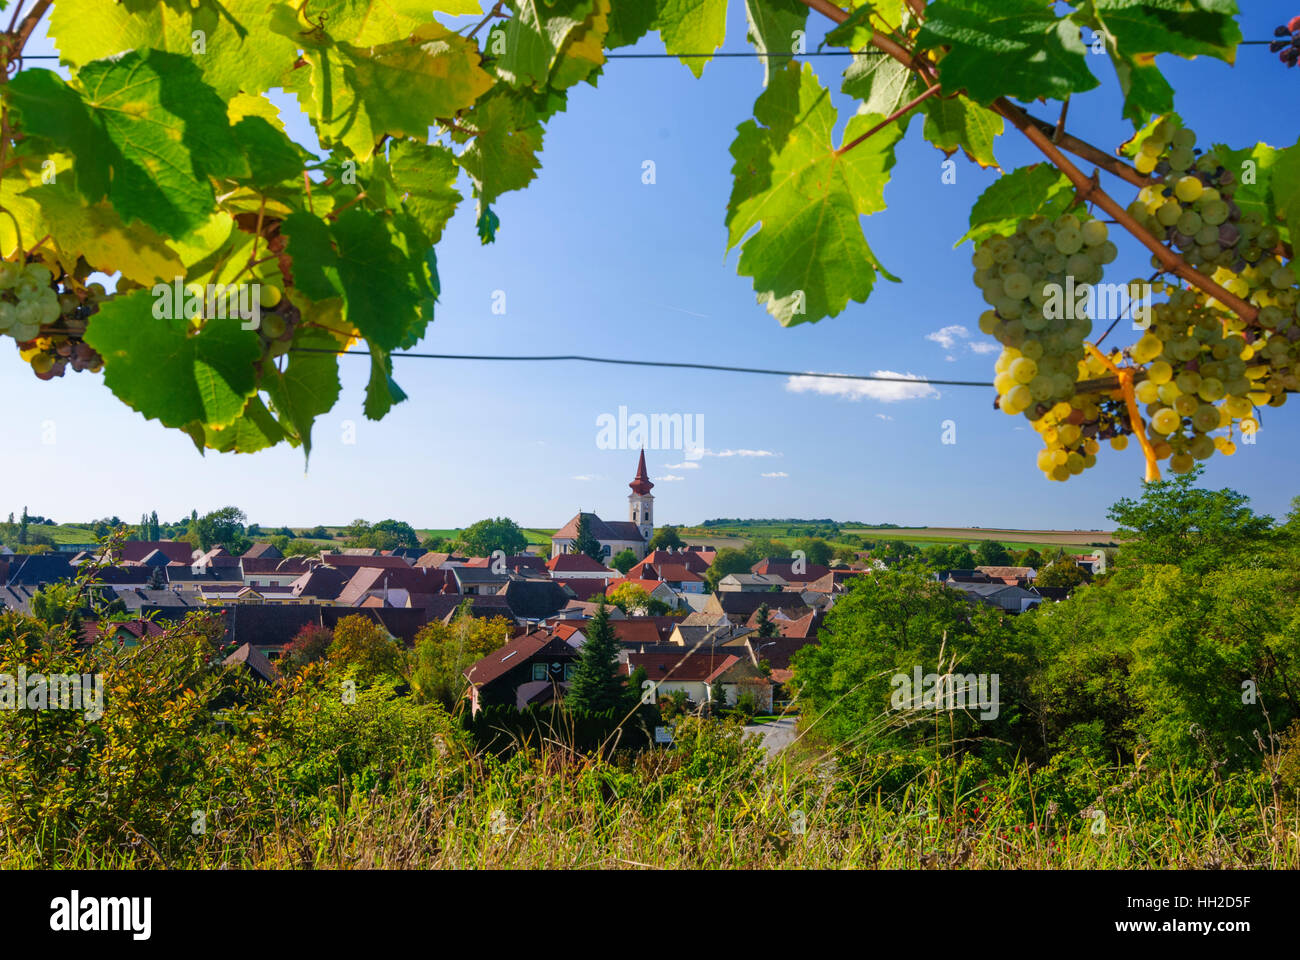 Großriedenthal: view to Großriedenthal, vineyard vineyards Wagram, Weinviertel, Niederösterreich, Lower Austria, Austria Stock Photo